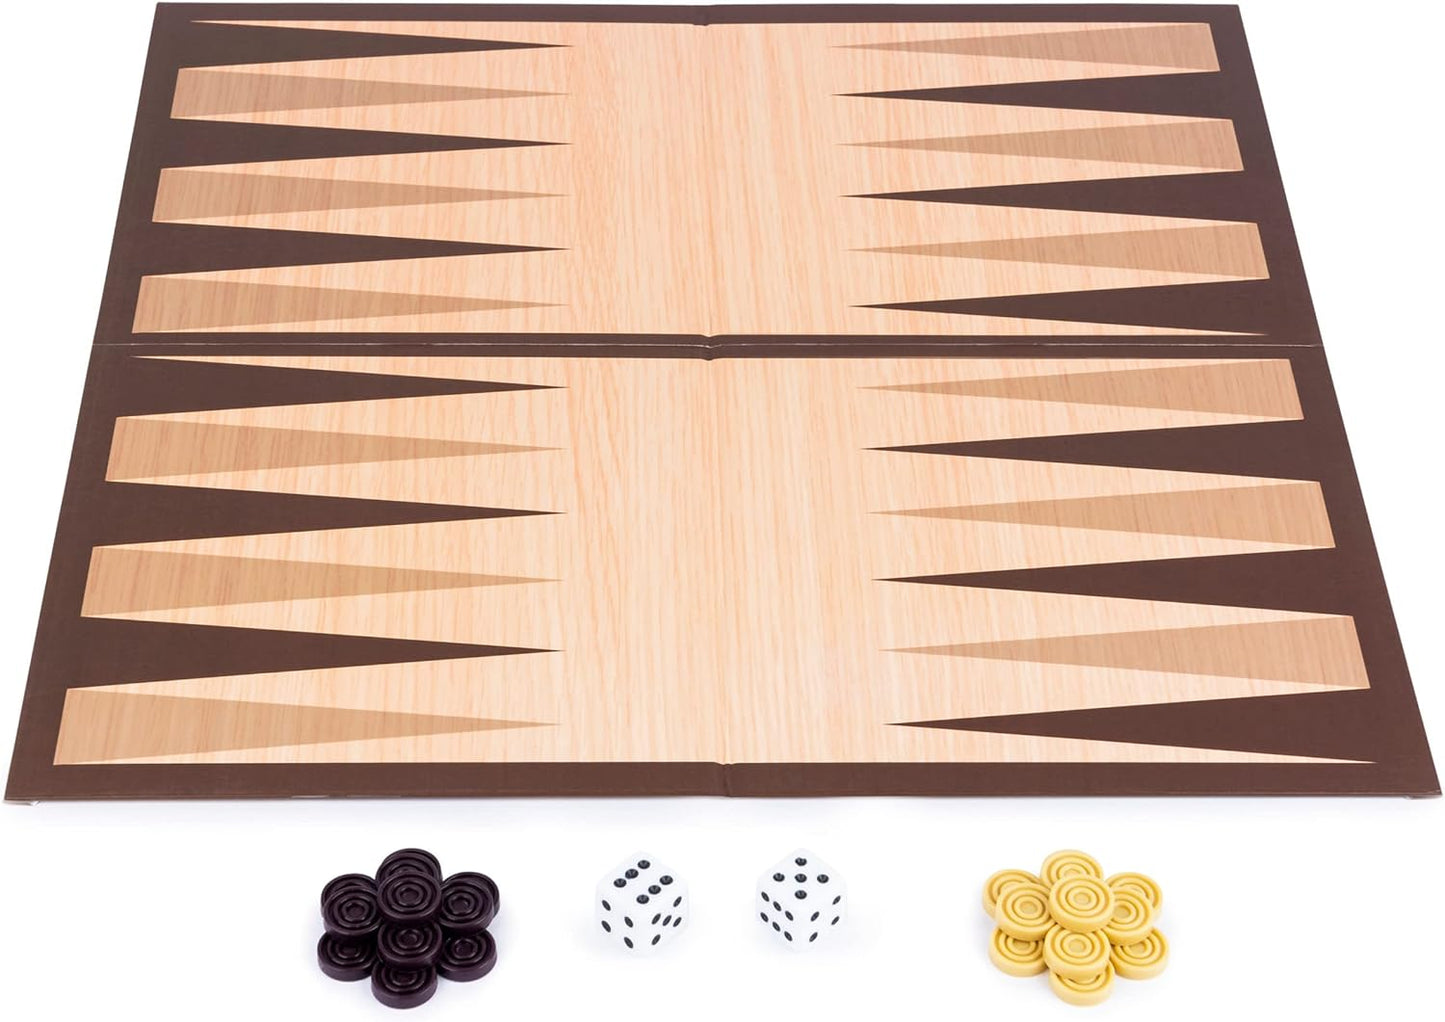 Spin Master - Cardinal, Backgammon Board Game